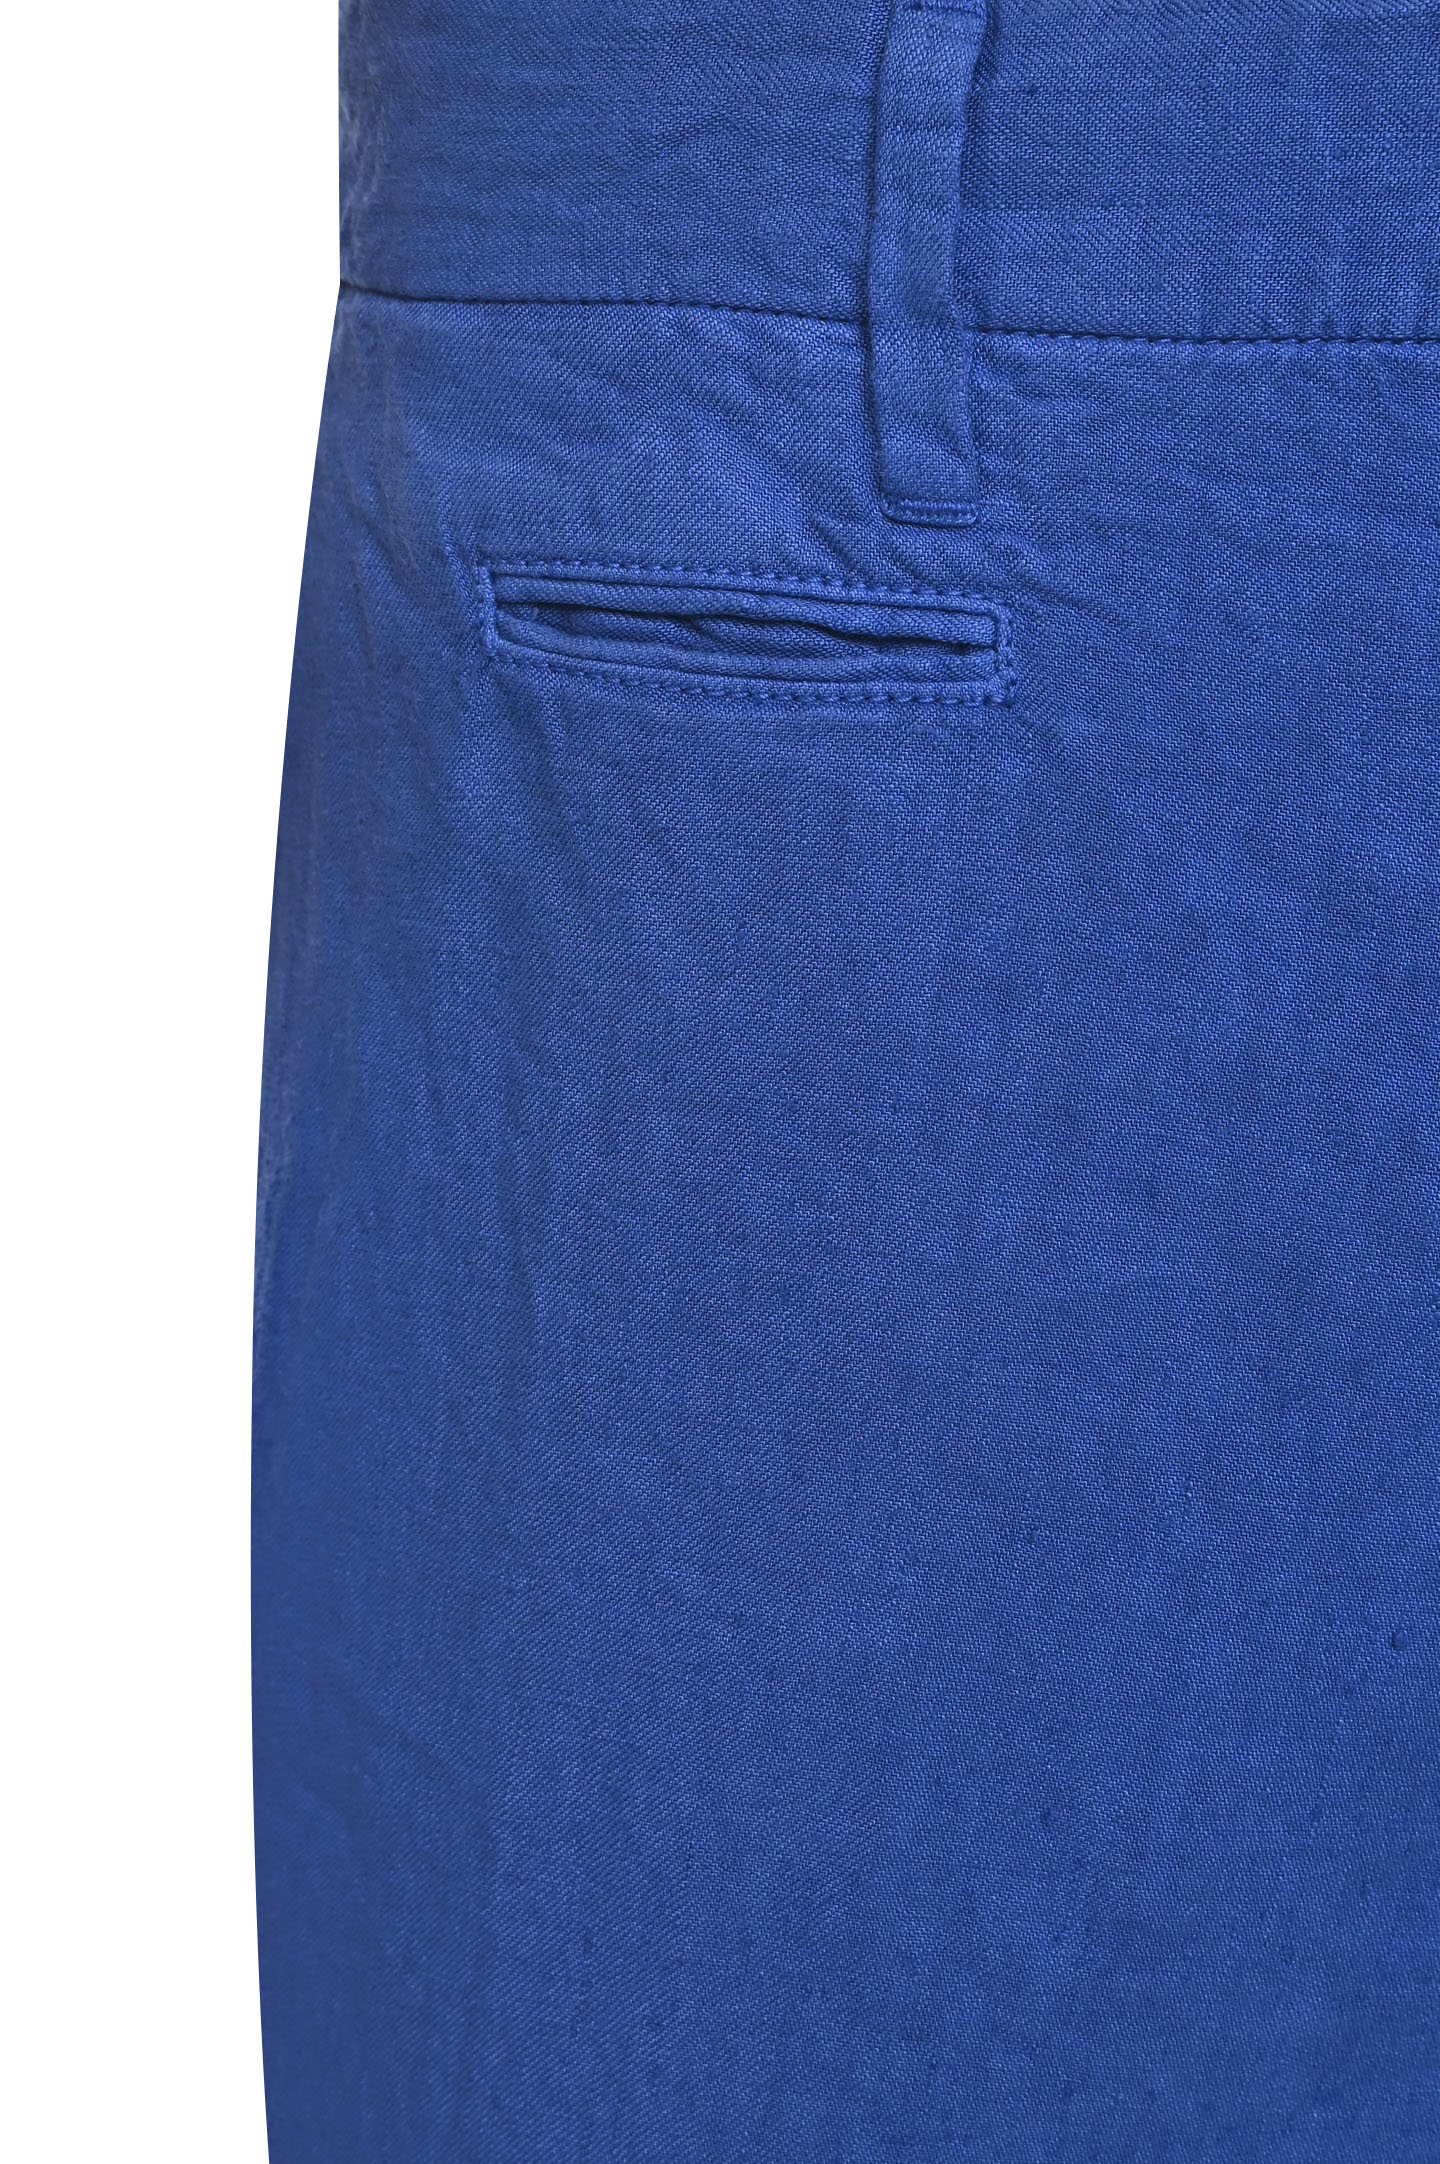 Шорты DORIANI CASHMERE P147/LI, цвет: Синий, Мужской